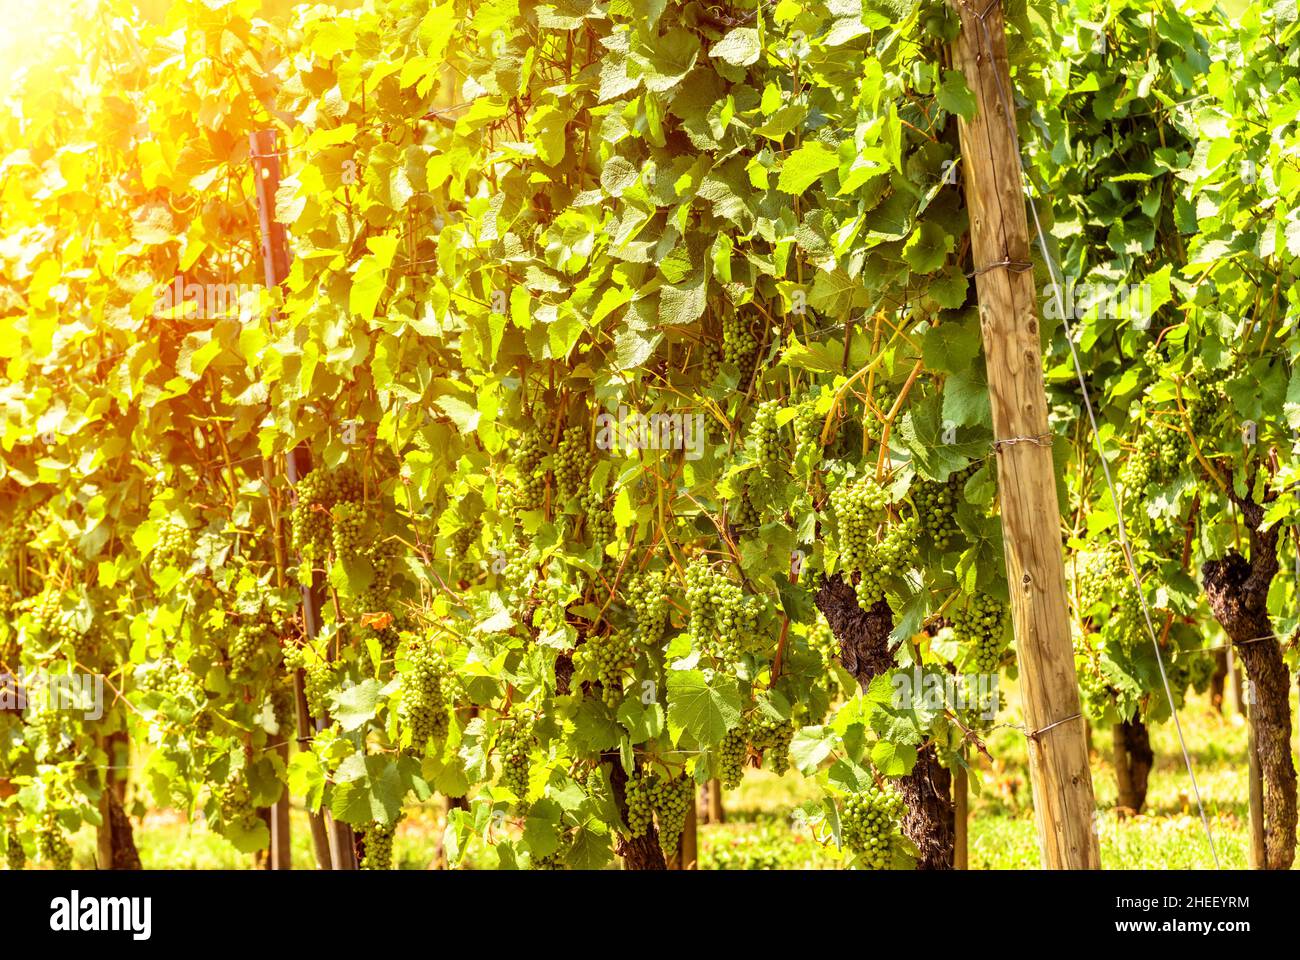 Weinberg im Sonnenlicht, sonniger Blick auf Weinrebenpflanzen und wachsende Trauben im Weinbaubetrieb. Grüne Weinanpflanzung im Sommer. Konzept des Weinbaus, Weingut, Stockfoto